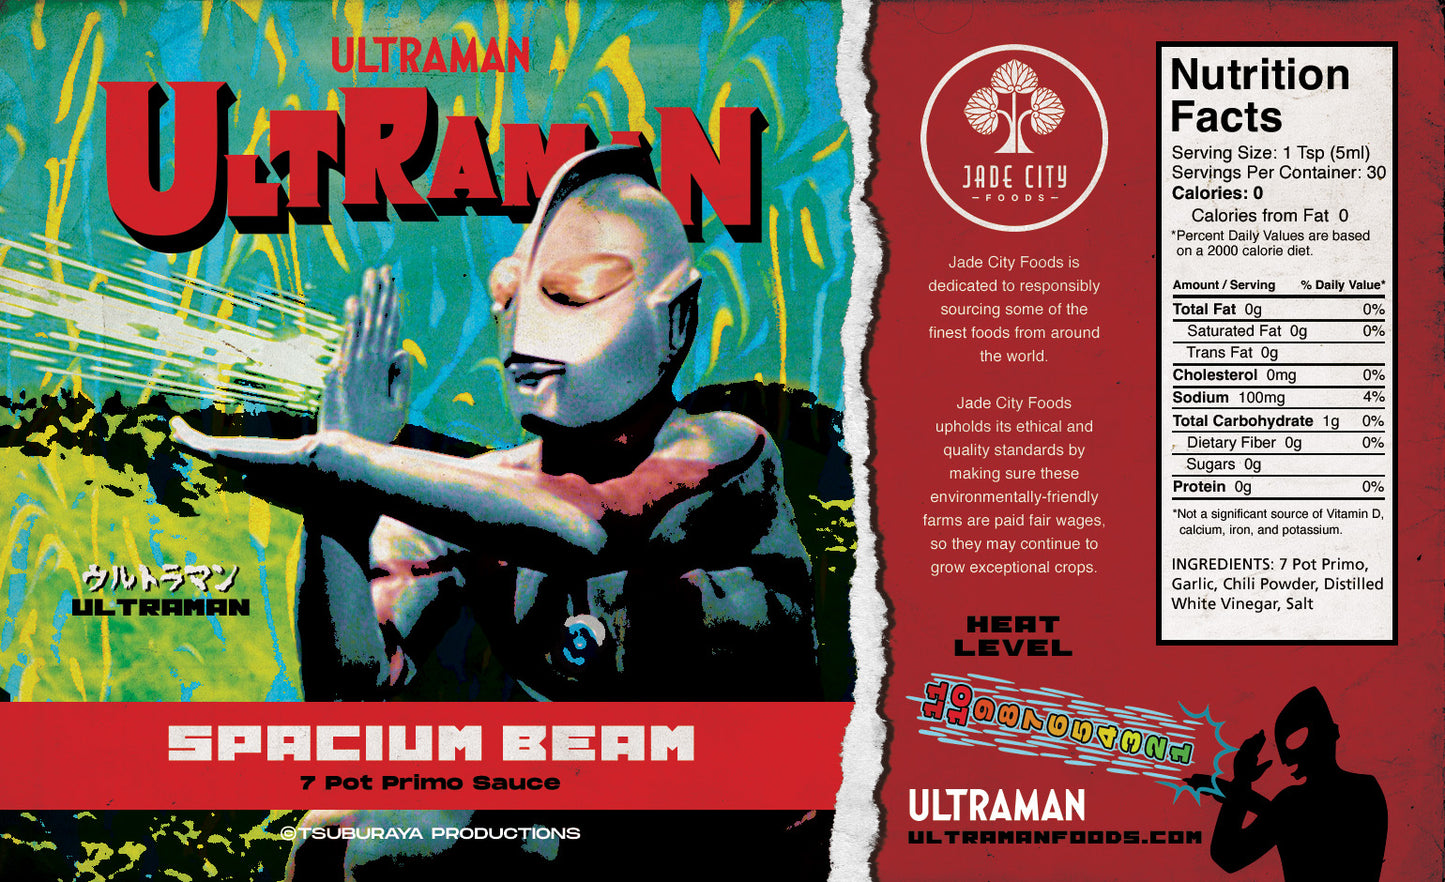 Ultraman's Spacium Beam : 7 Pot Primo Sauce